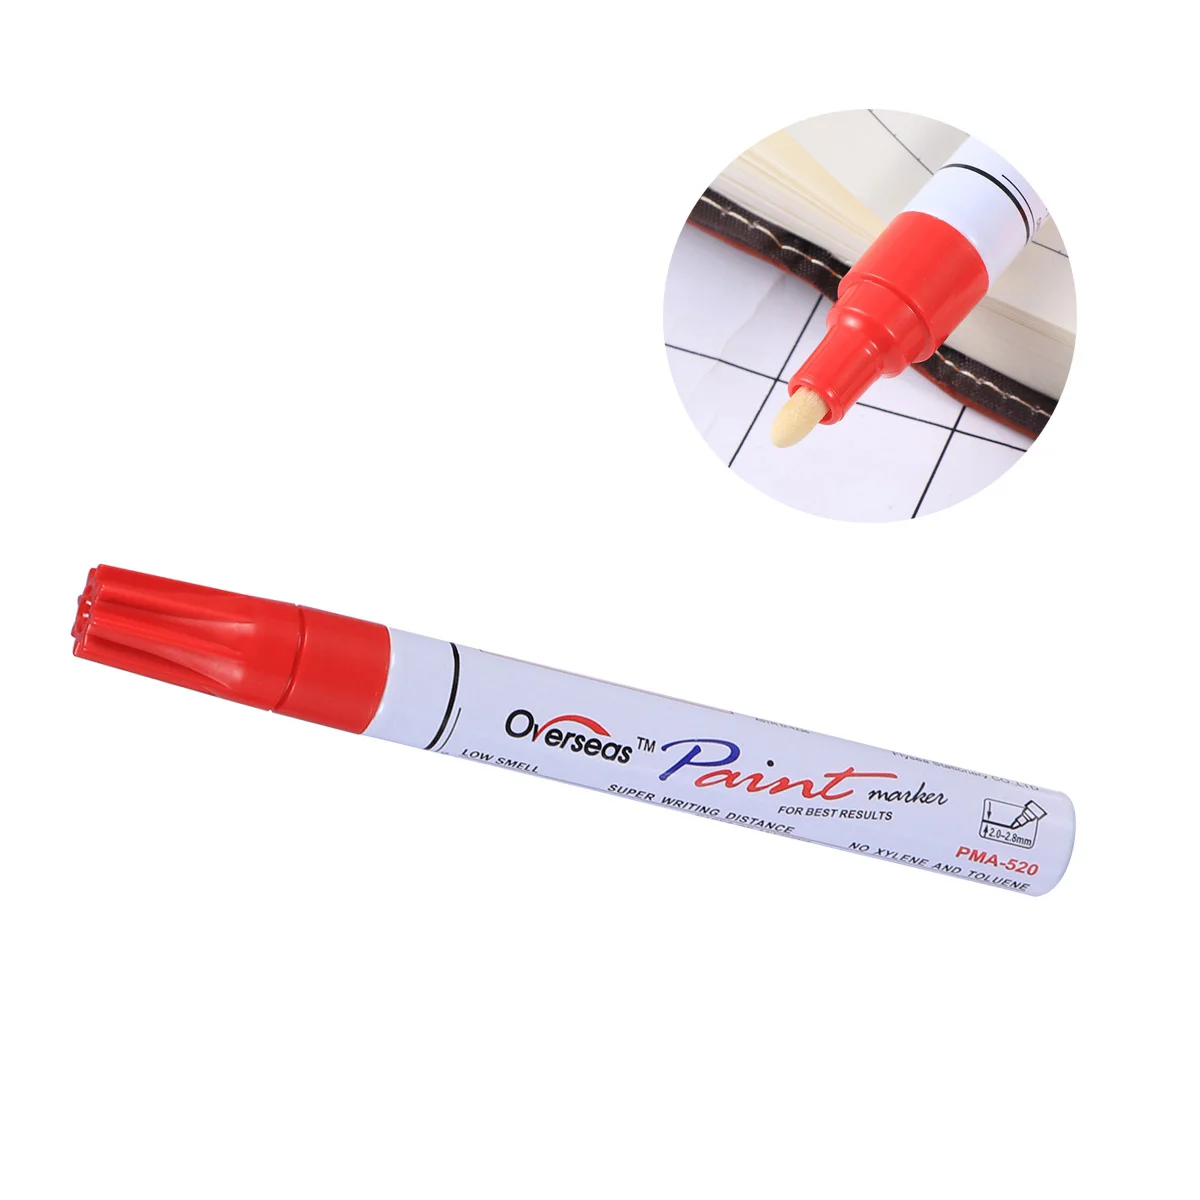 

Paint Pens Black Paint For Cars Care Scratching Repair Touch Up Paint Marker Pen Concealing Tool Convenient Automotive Line